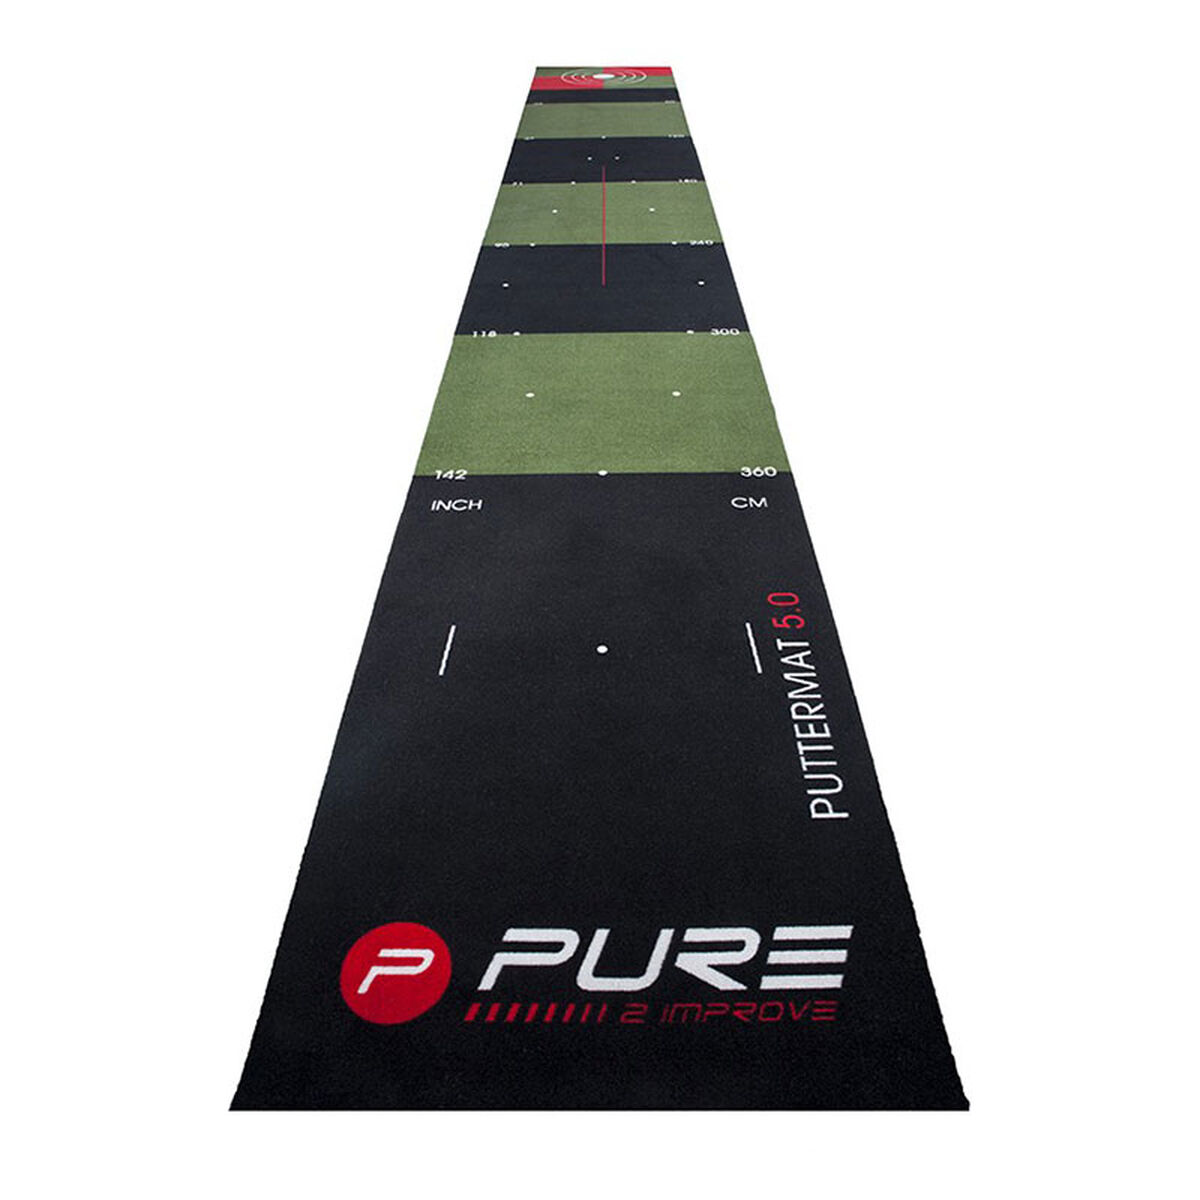 Tapis De Putt De Golf Pure 2 Improve 5.0, homme, Pur | Online Golf